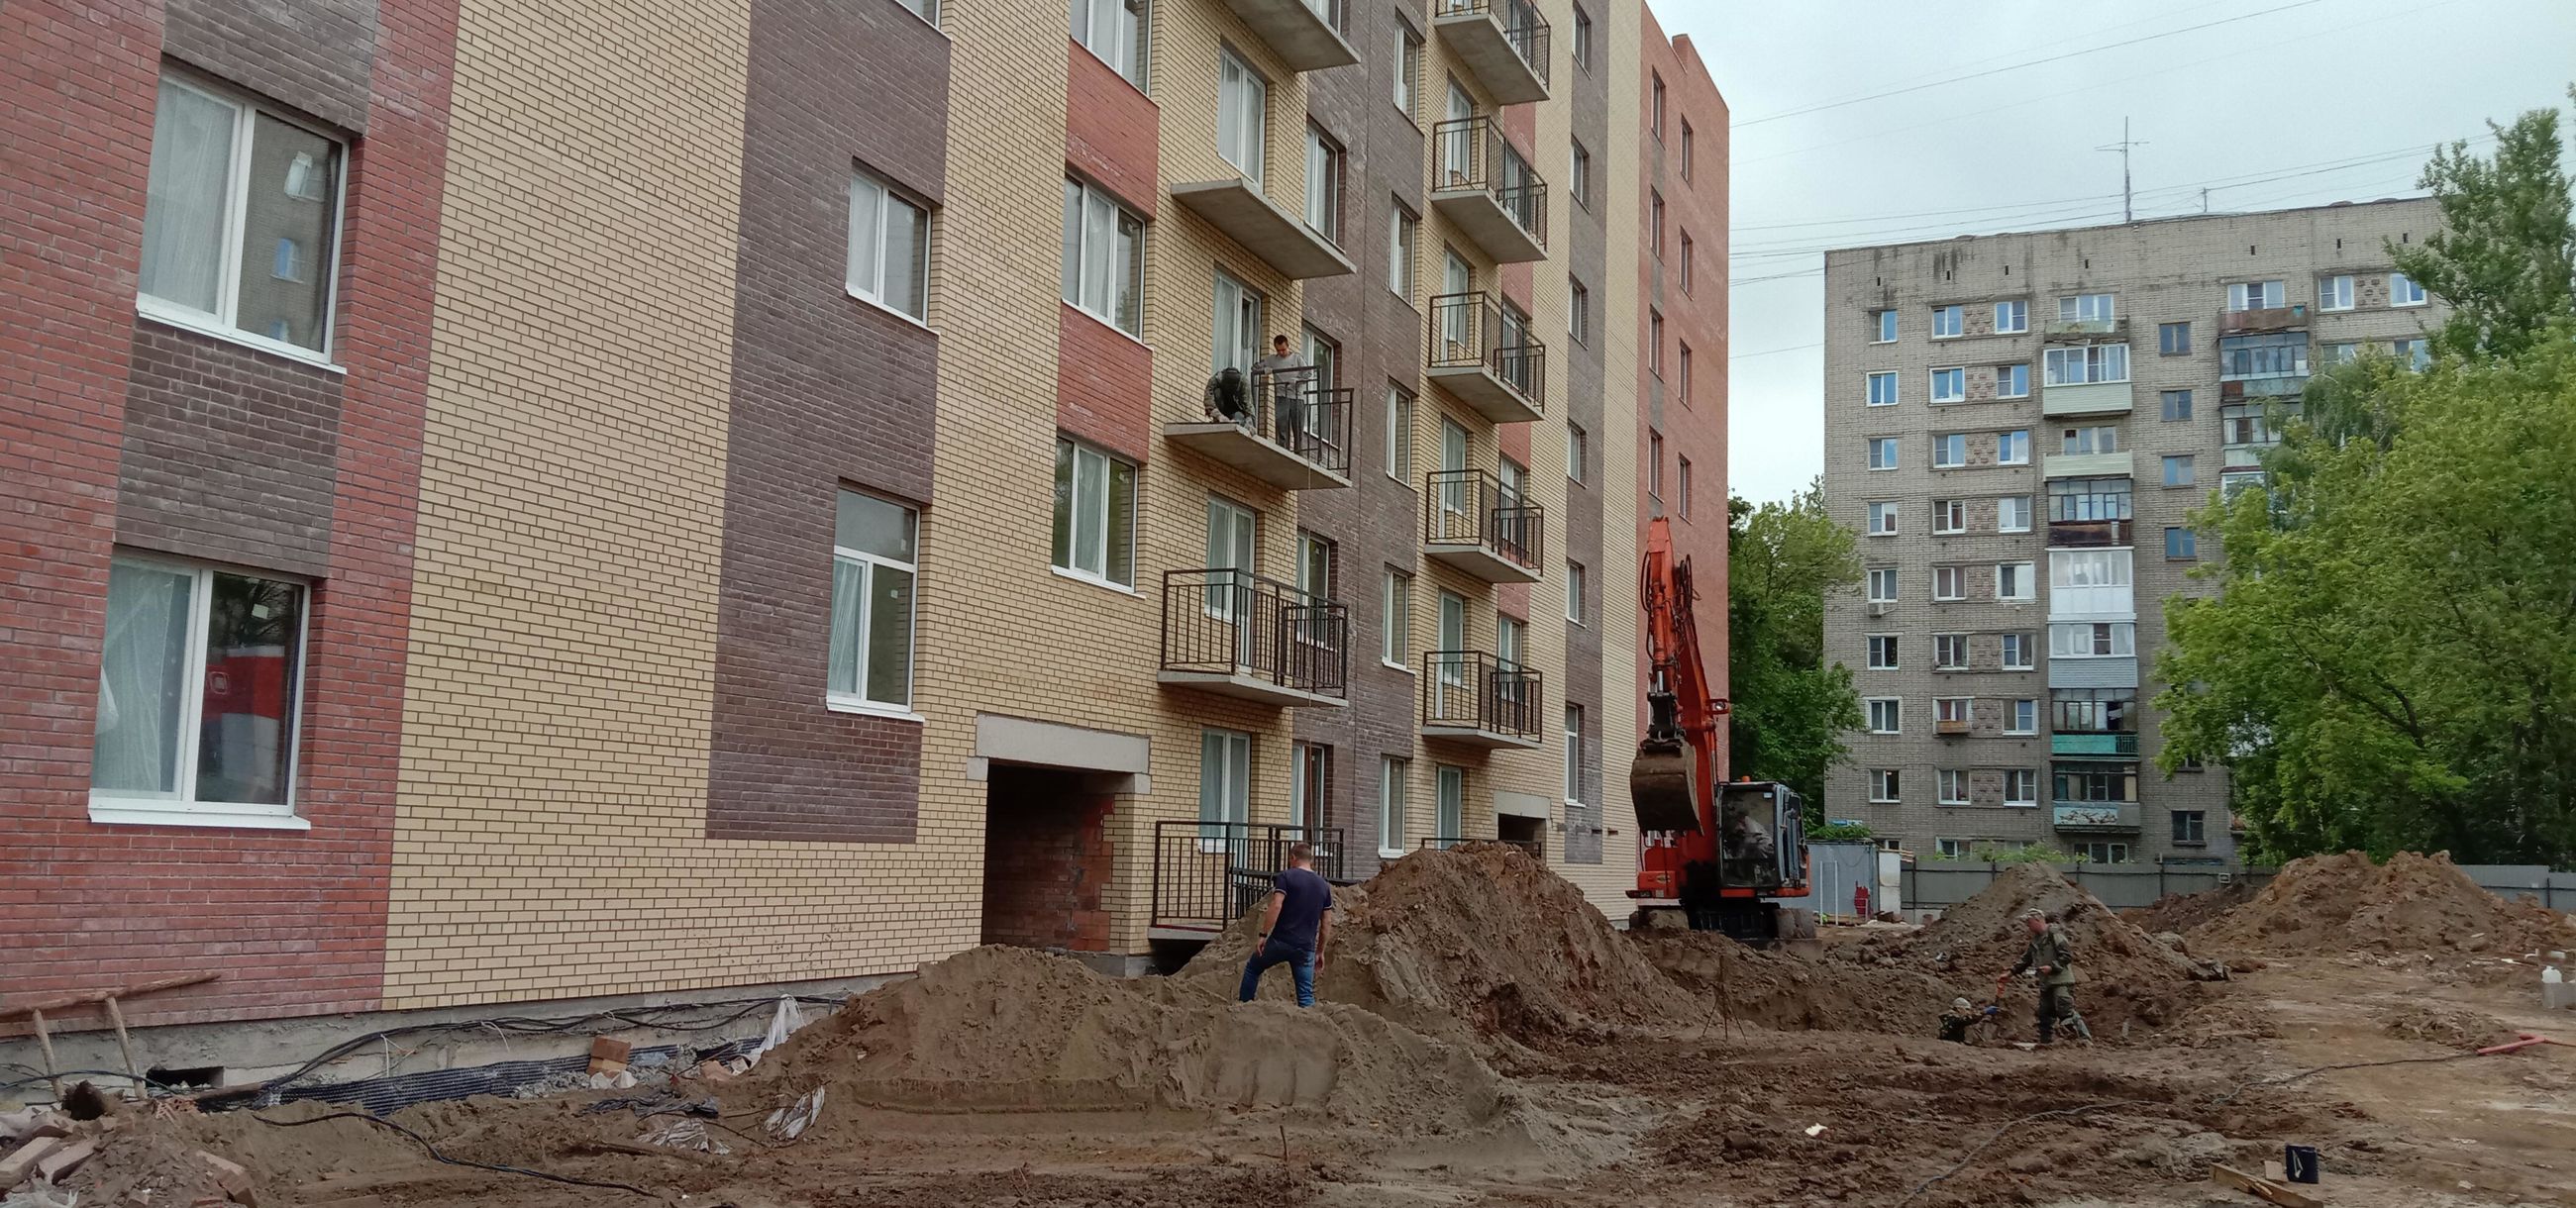 В Ярославле строится жилье для переселенцев из ветхих и аварийных домов